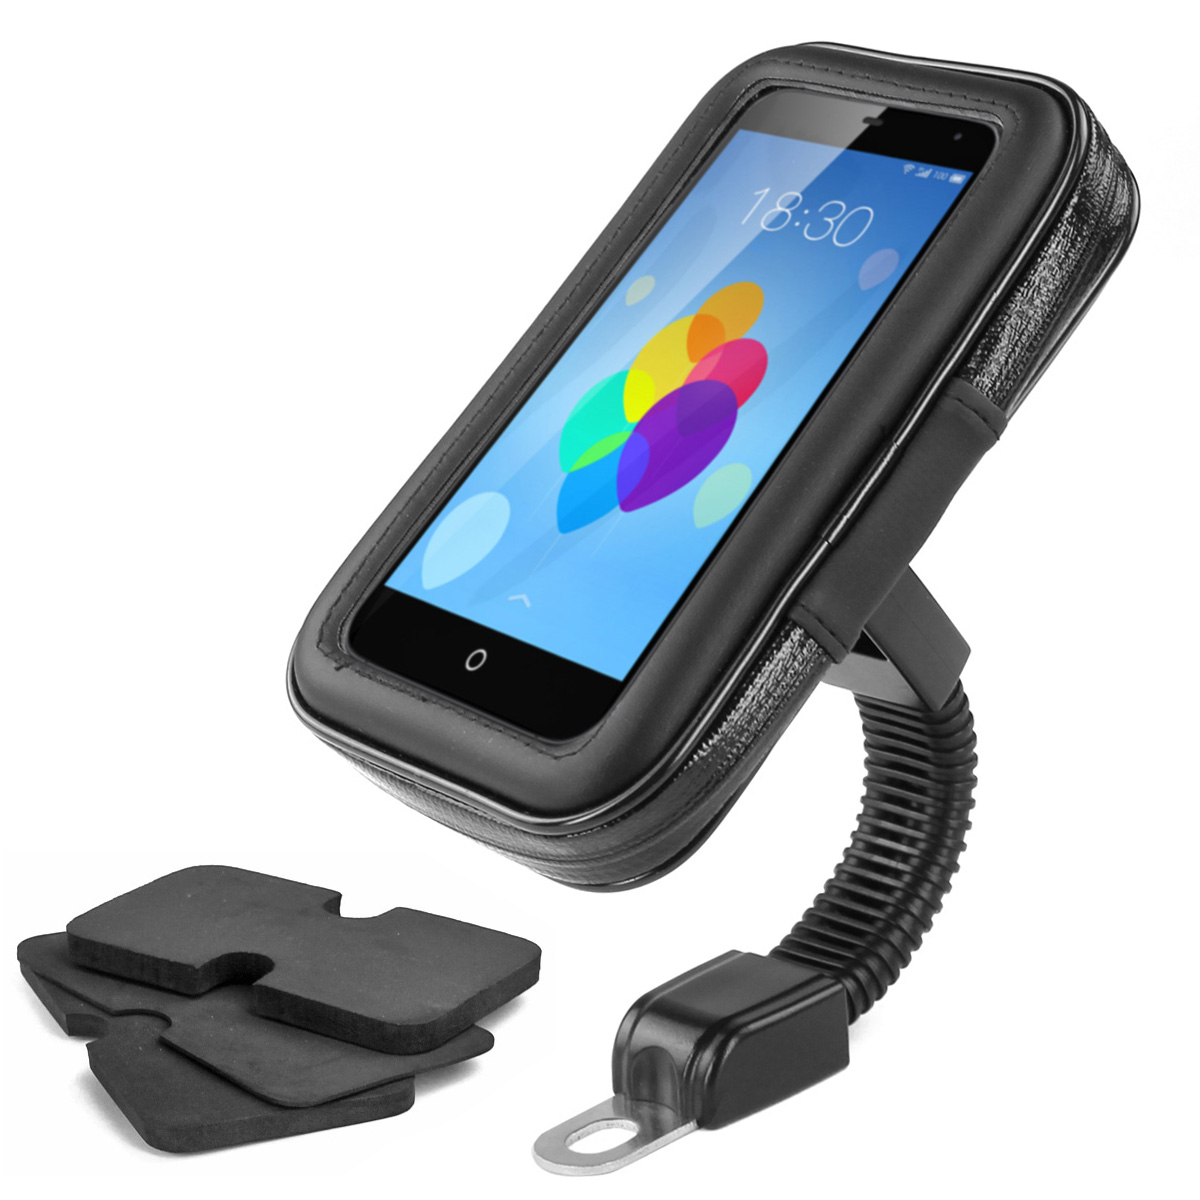 Navi Mobile Phone Holder GPS PDA Navigation Smartphone Holder for